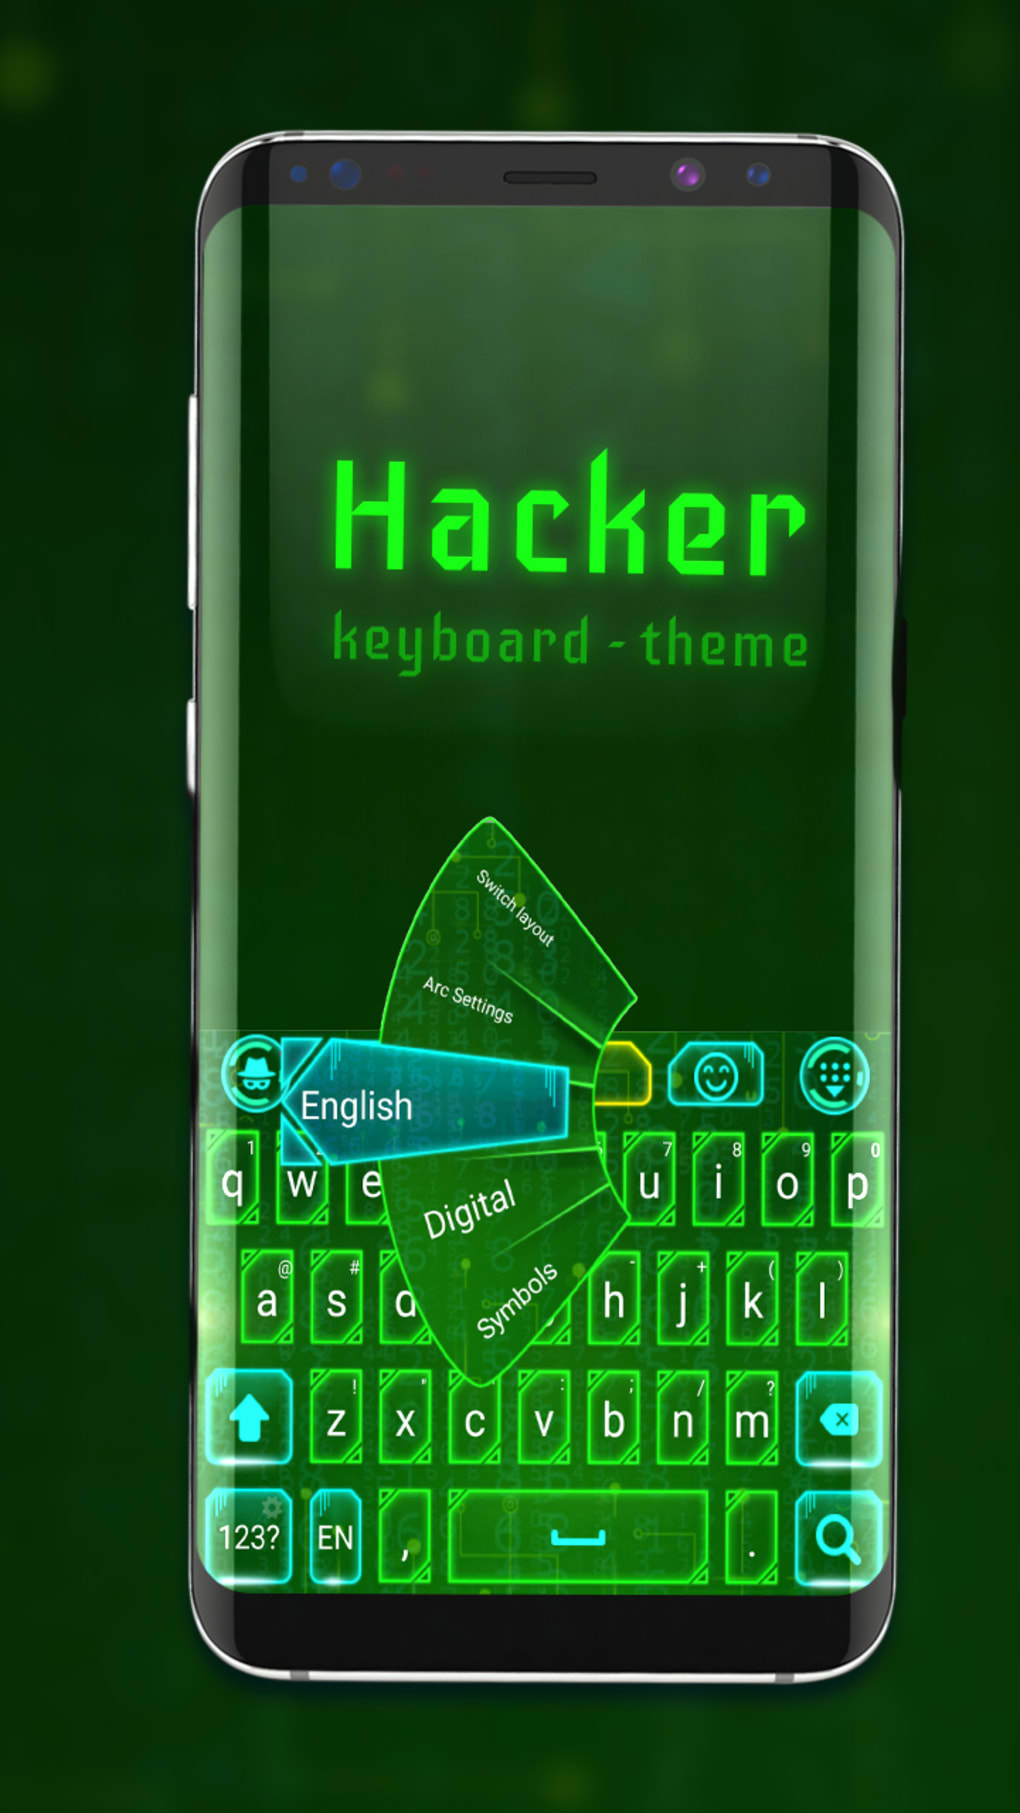 Hacker's Keyboard – Apps on Google Play